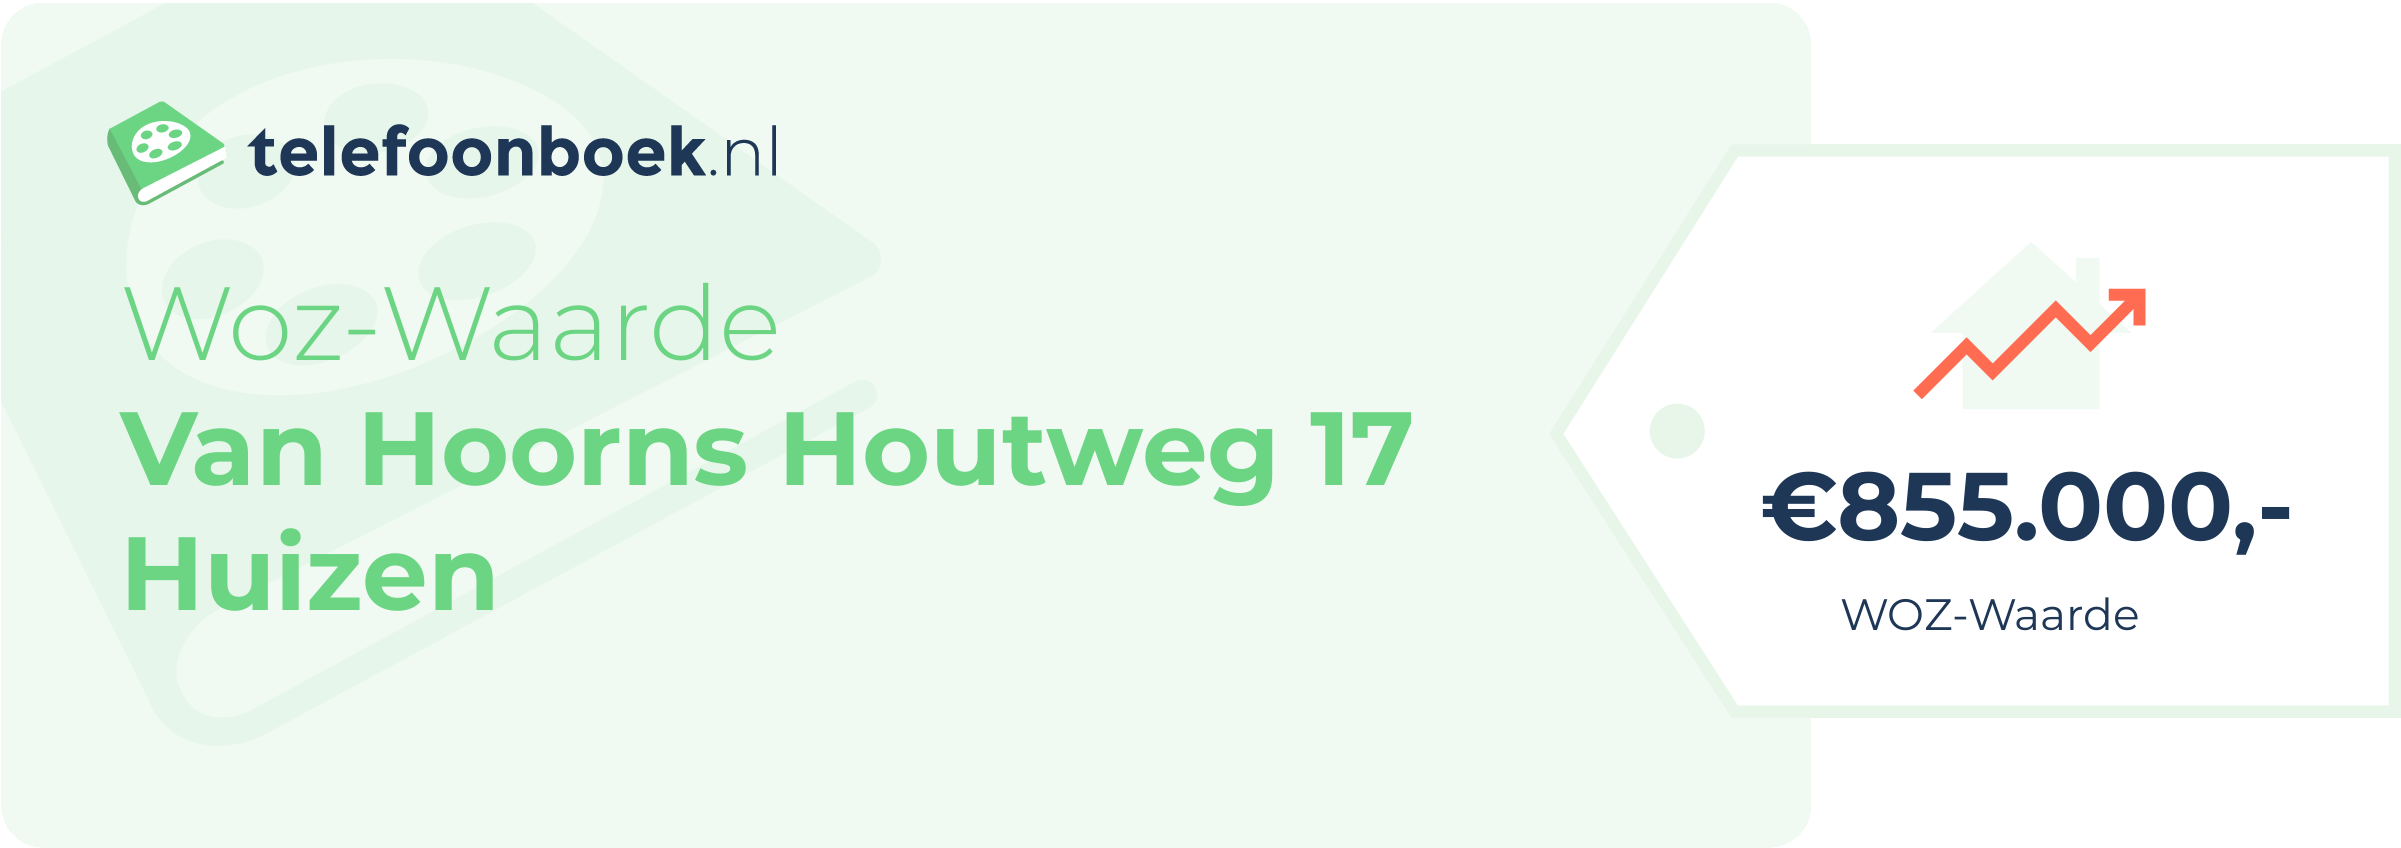 WOZ-waarde Van Hoorns Houtweg 17 Huizen